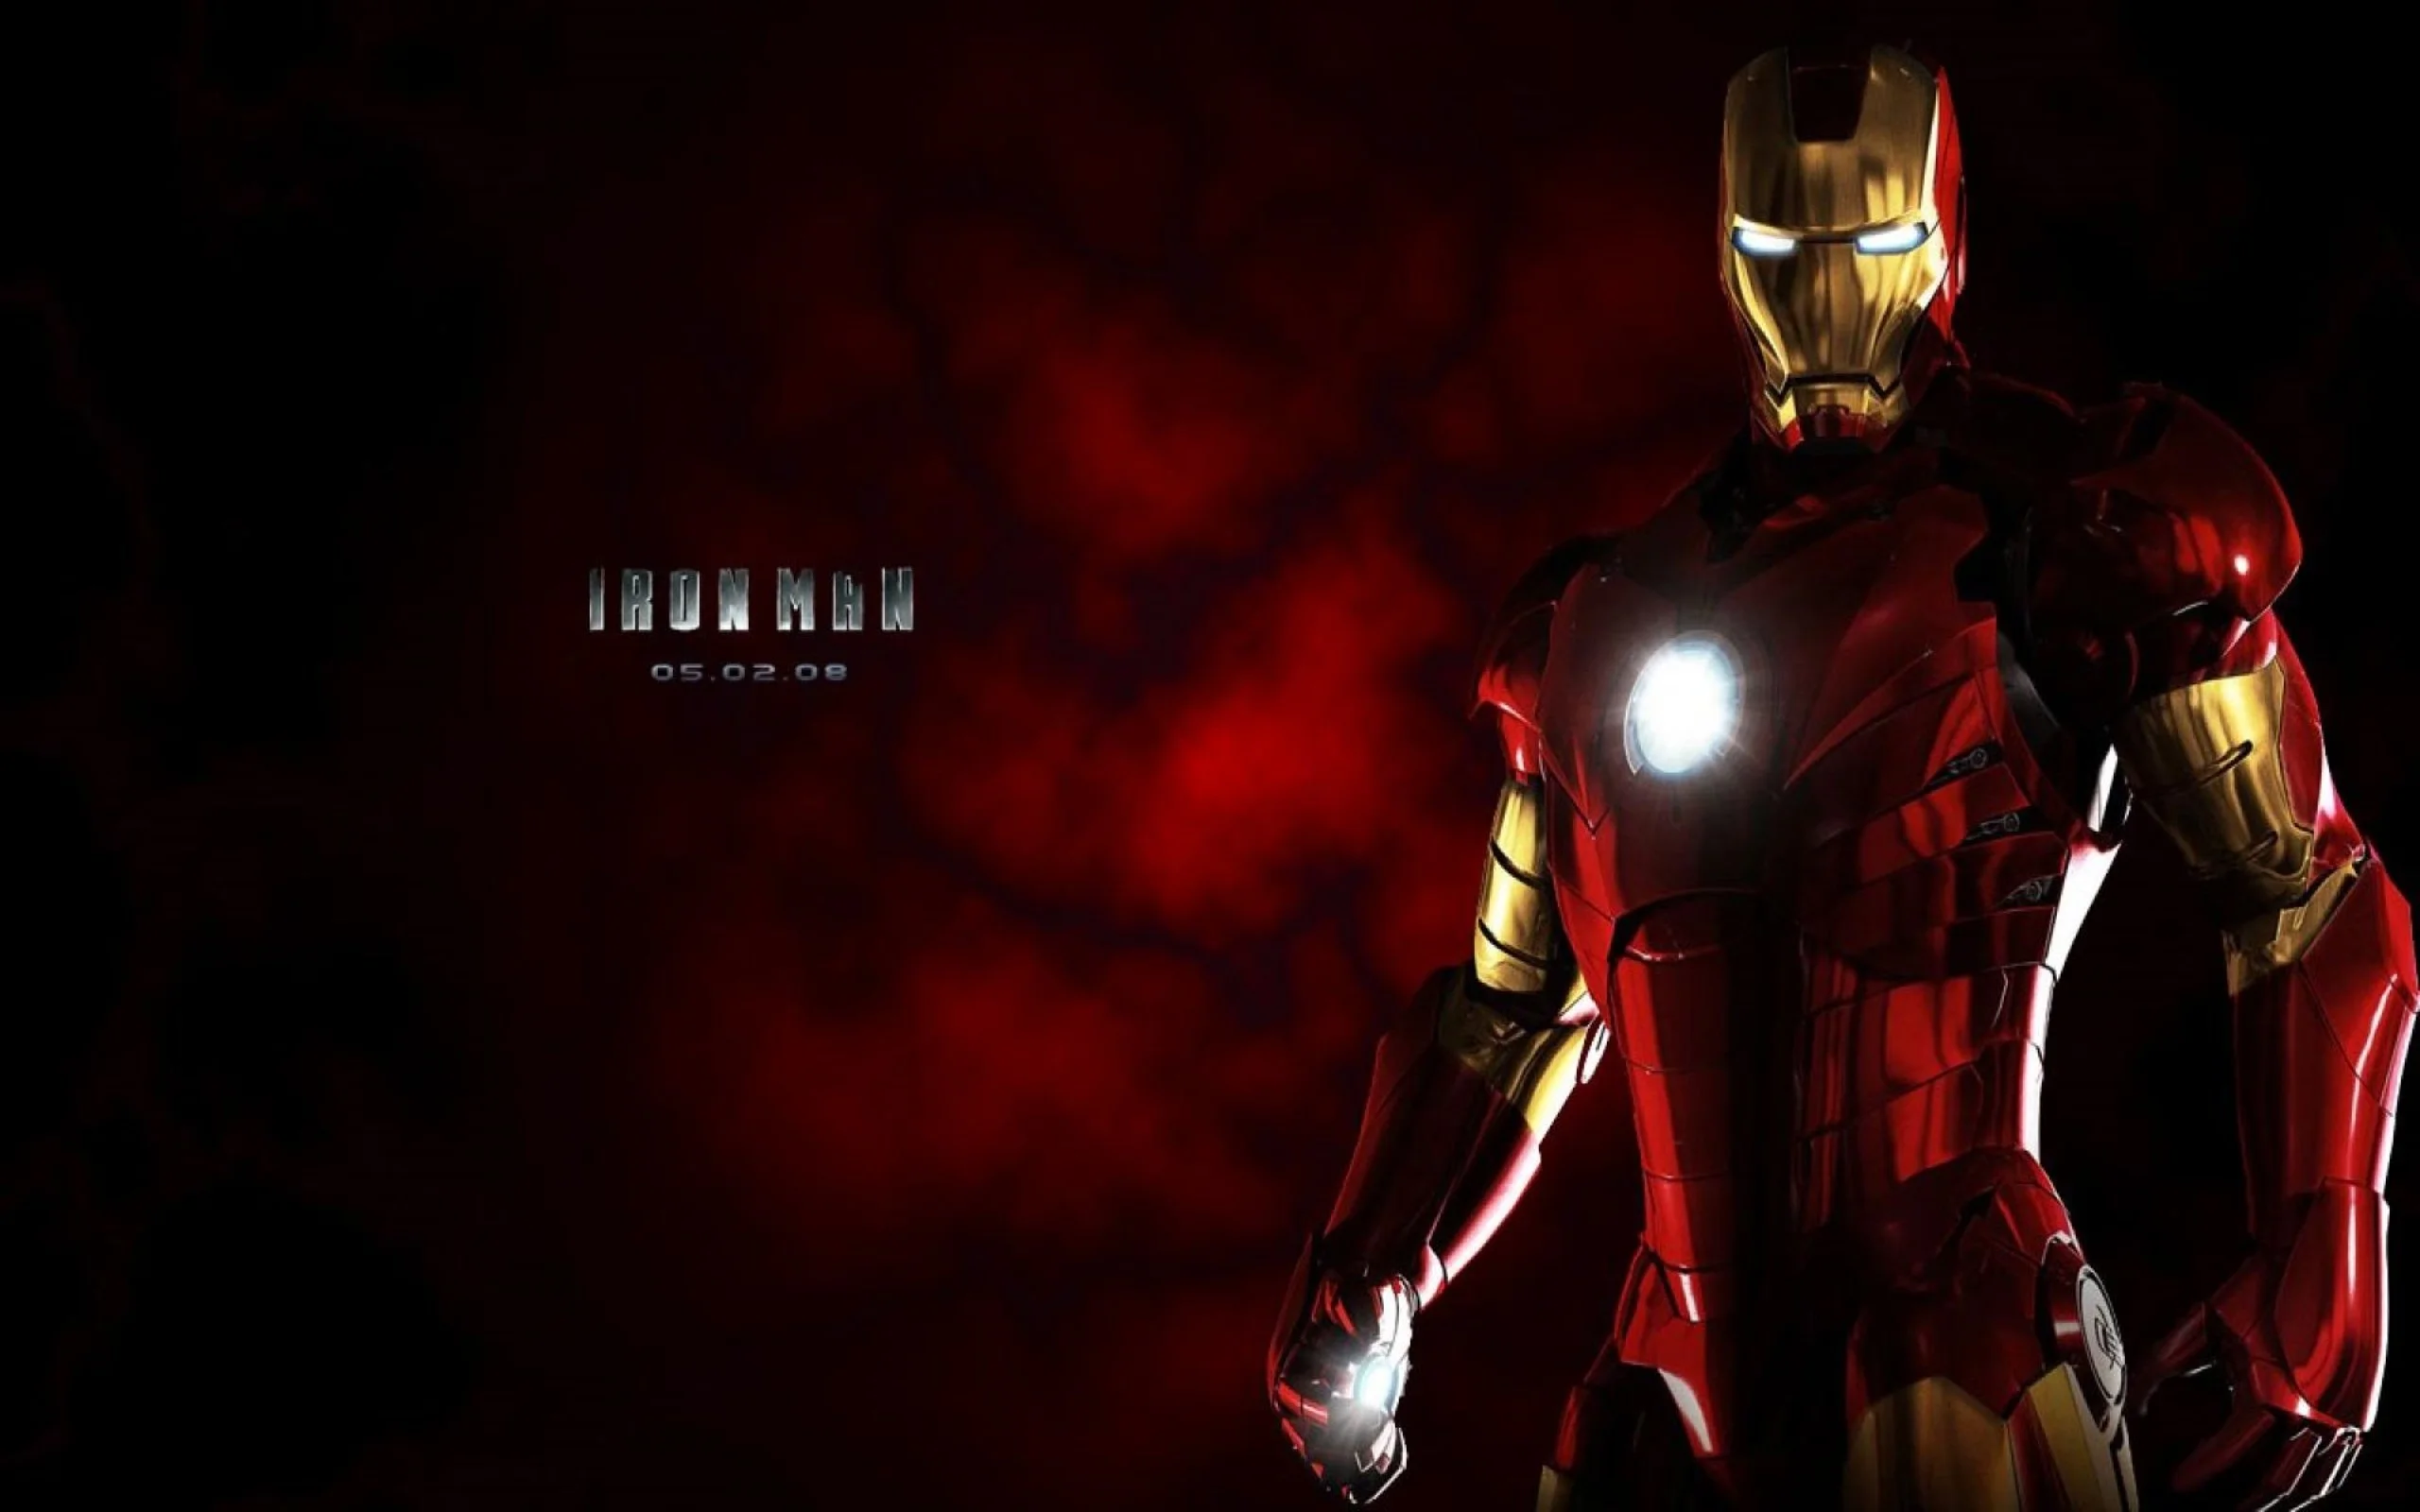 Iron Man - Người Sắt là một siêu anh hùng không thể thiếu trong vũ trụ điện ảnh Marvel. Thông minh, tài năng và bất khả chiến bại, anh ta sẽ luôn là nguồn cảm hứng lớn với những ai yêu thích phim hành động. Những hình ảnh về Iron Man chắc chắn sẽ mang đến cho bạn những trải nghiệm tuyệt vời.